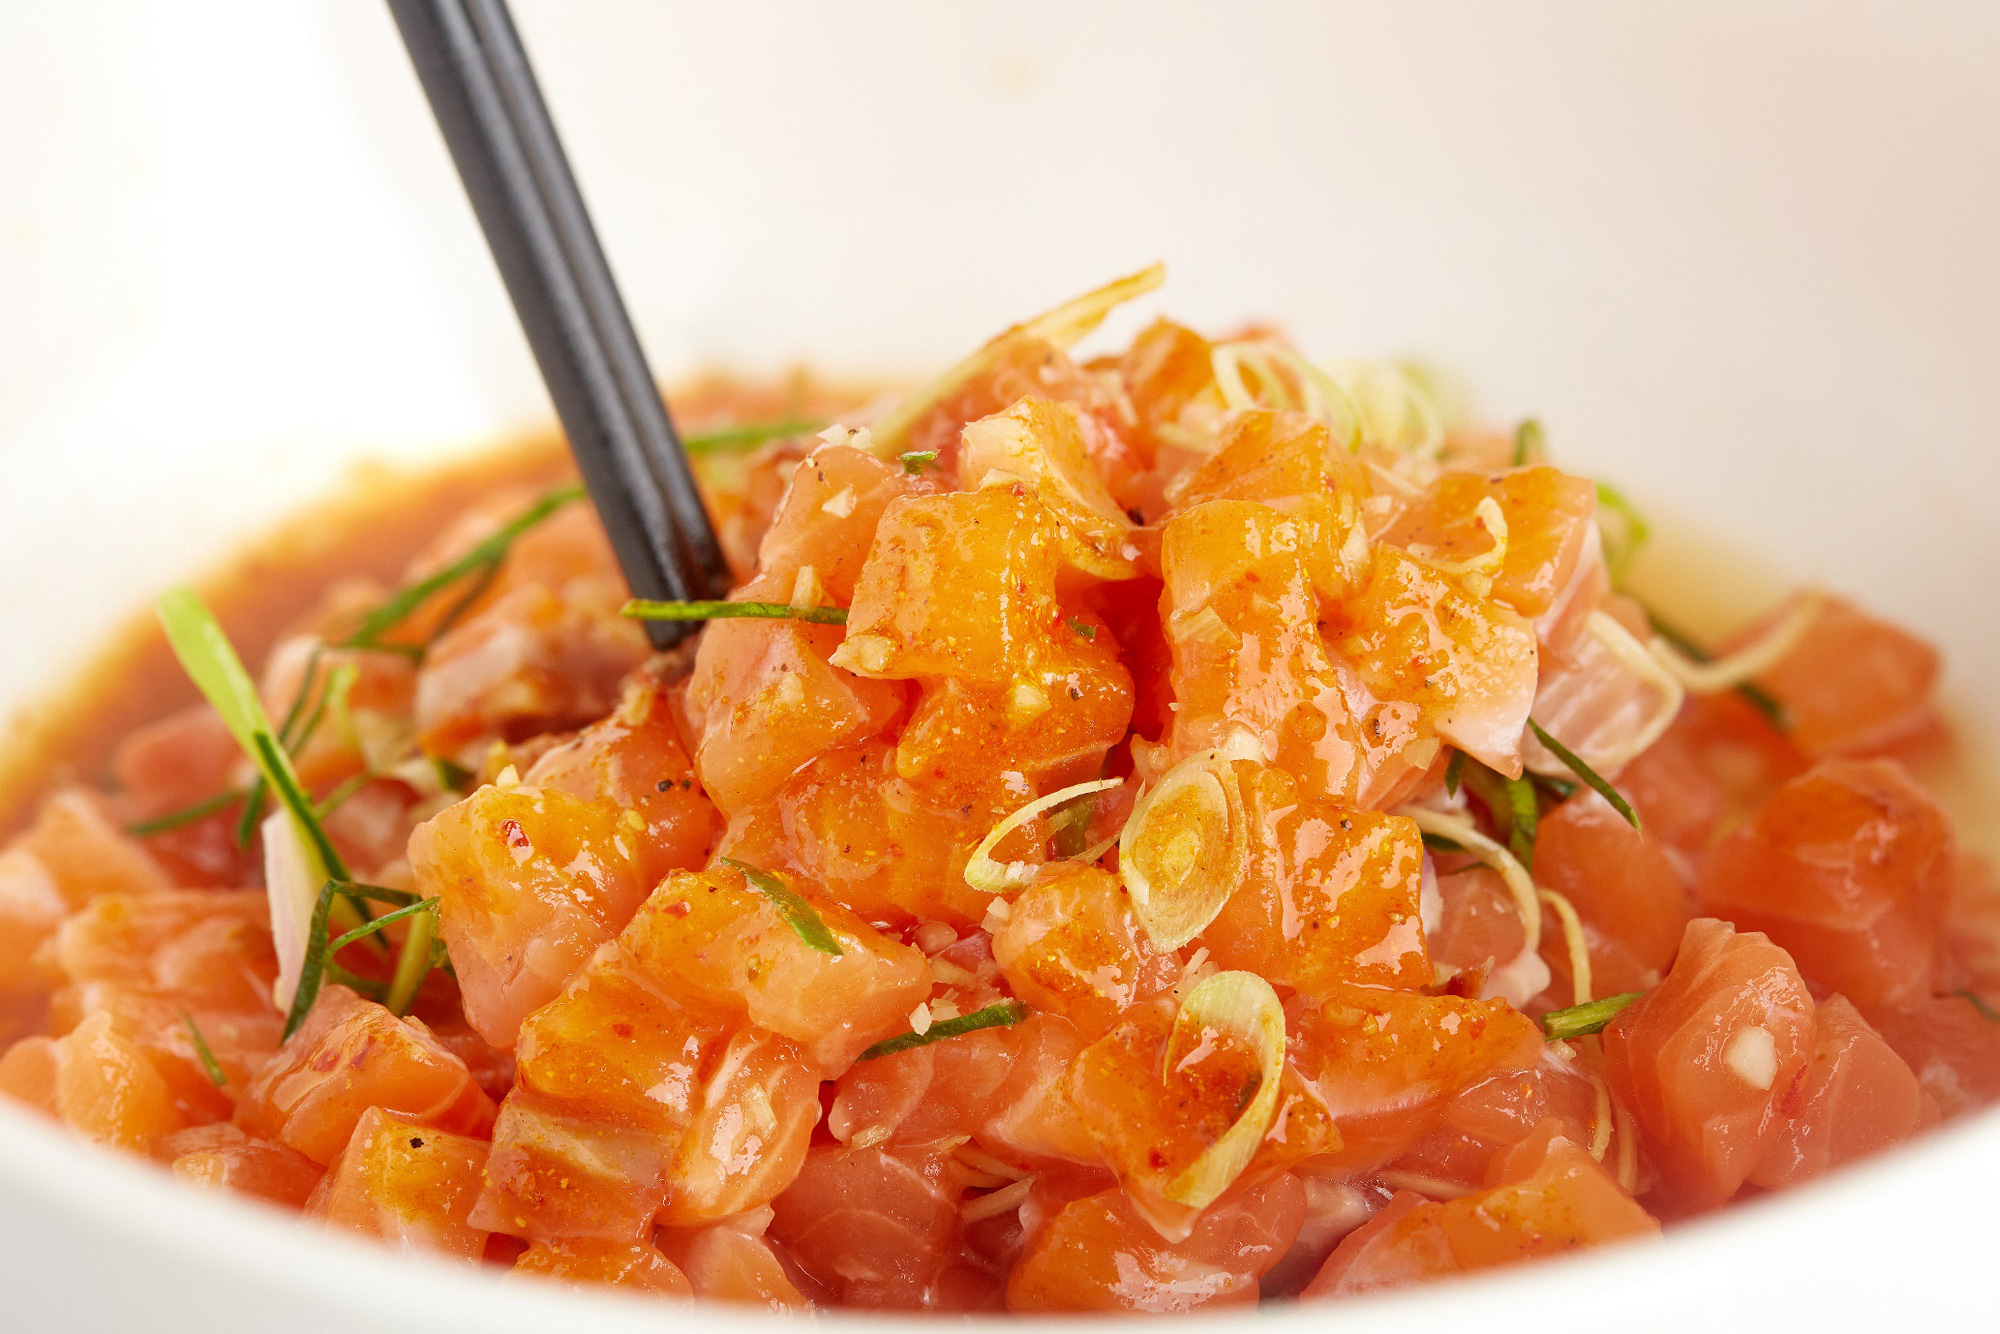 Chef Tuyết Phạm chỉ cách làm sốt mắm chấm đặc biệt ăn kèm gỏi cá hồi lạ miệng - Ảnh 5.